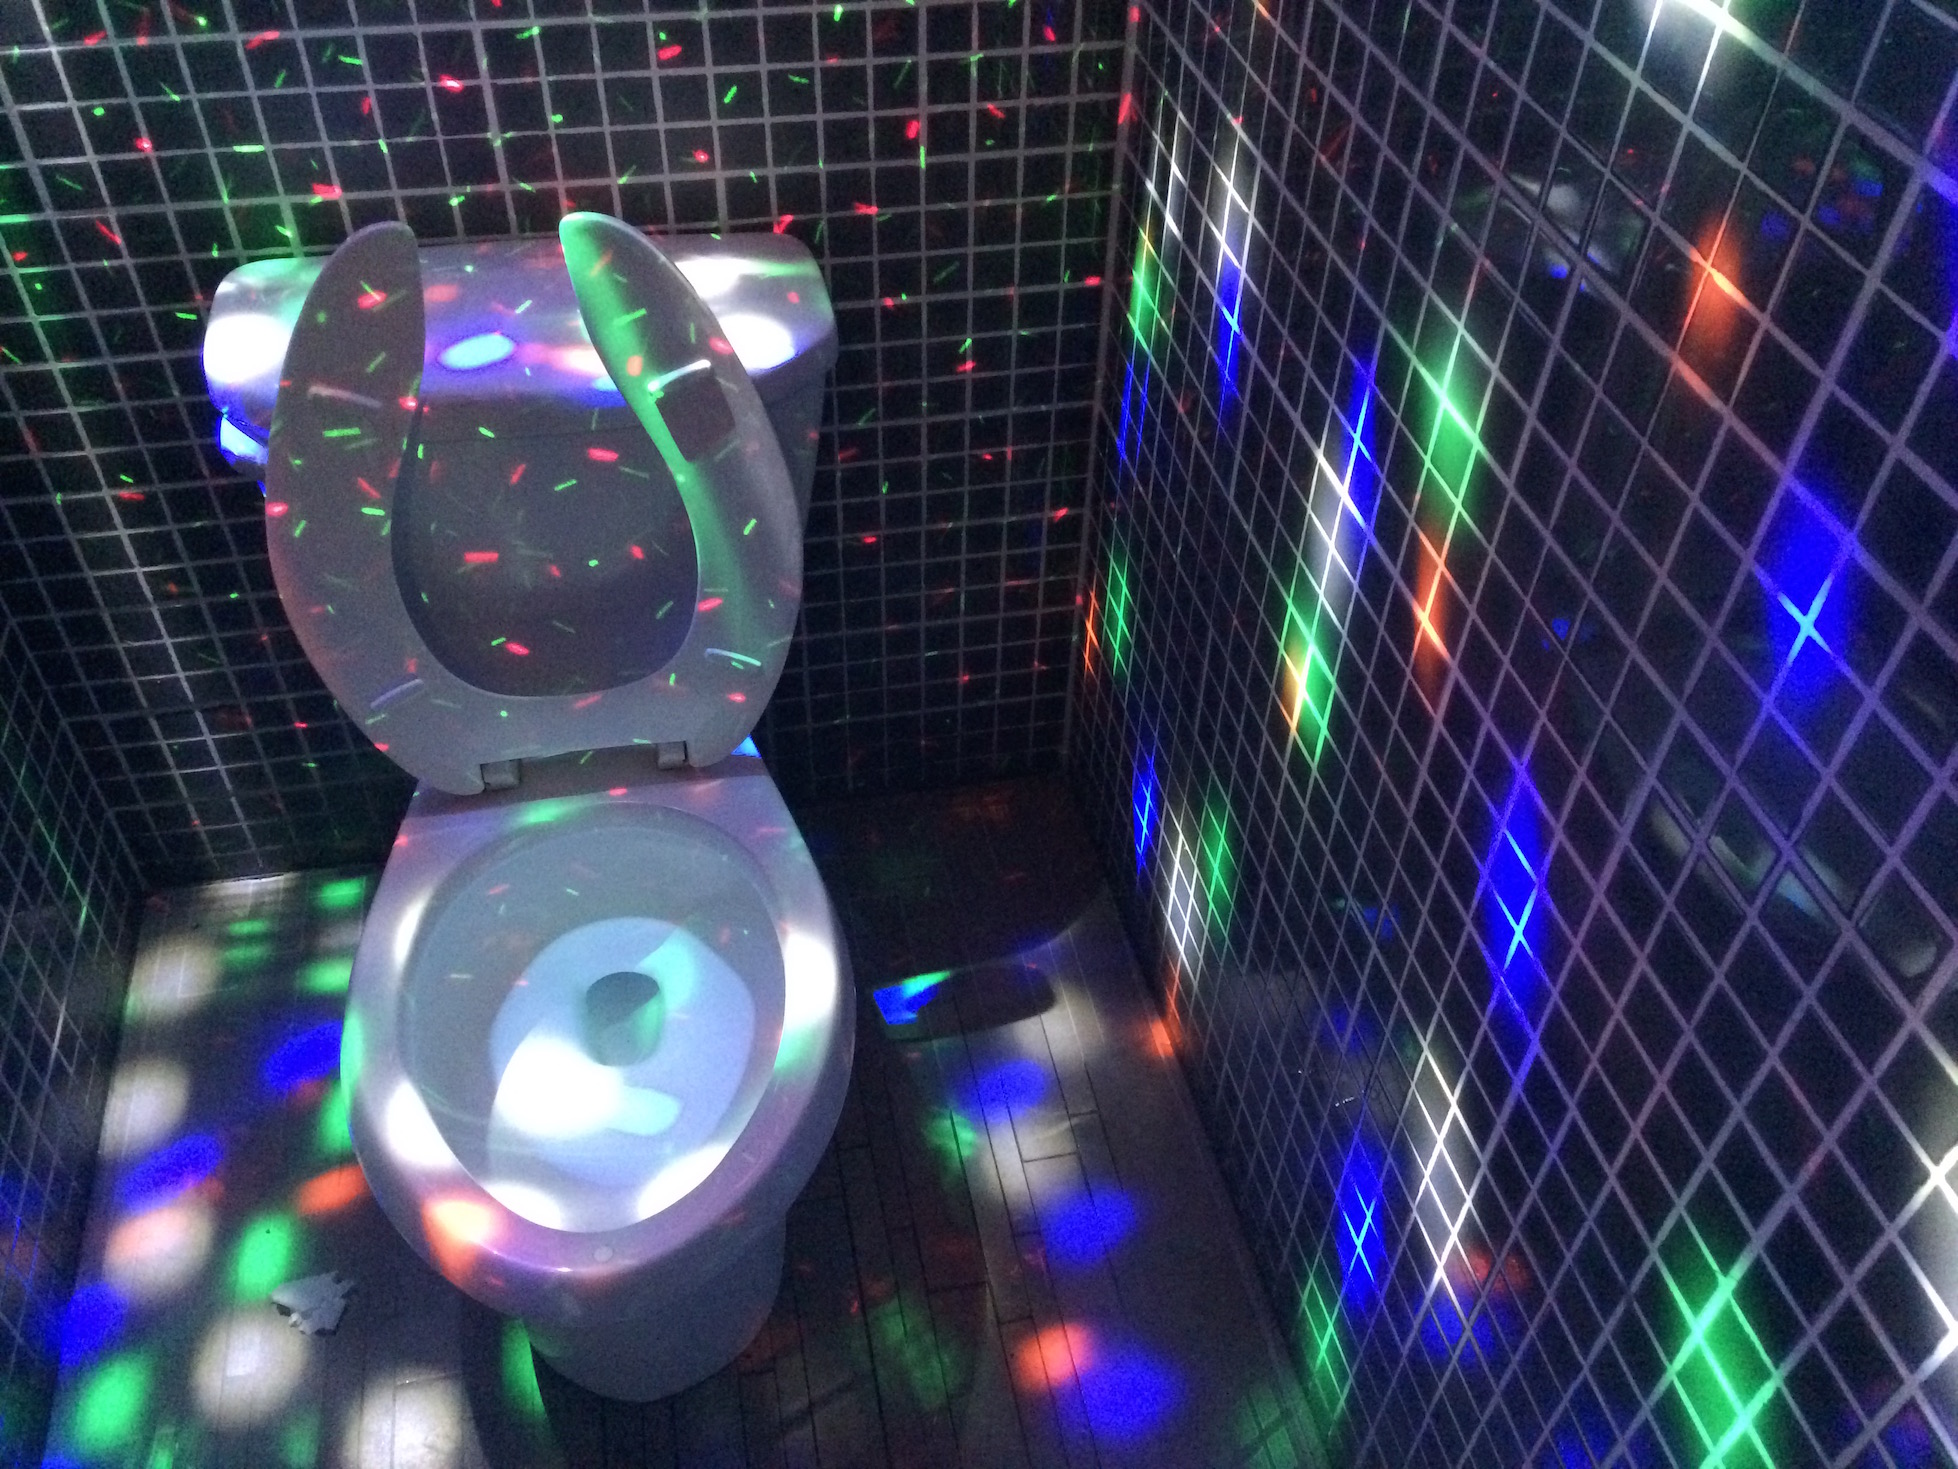 Ночной клуб туалет видео. Неоновый туалет. Дизайн туалета в ночном клубе. Диско шар в туалете. Унитаз с неоновой подсветкой.